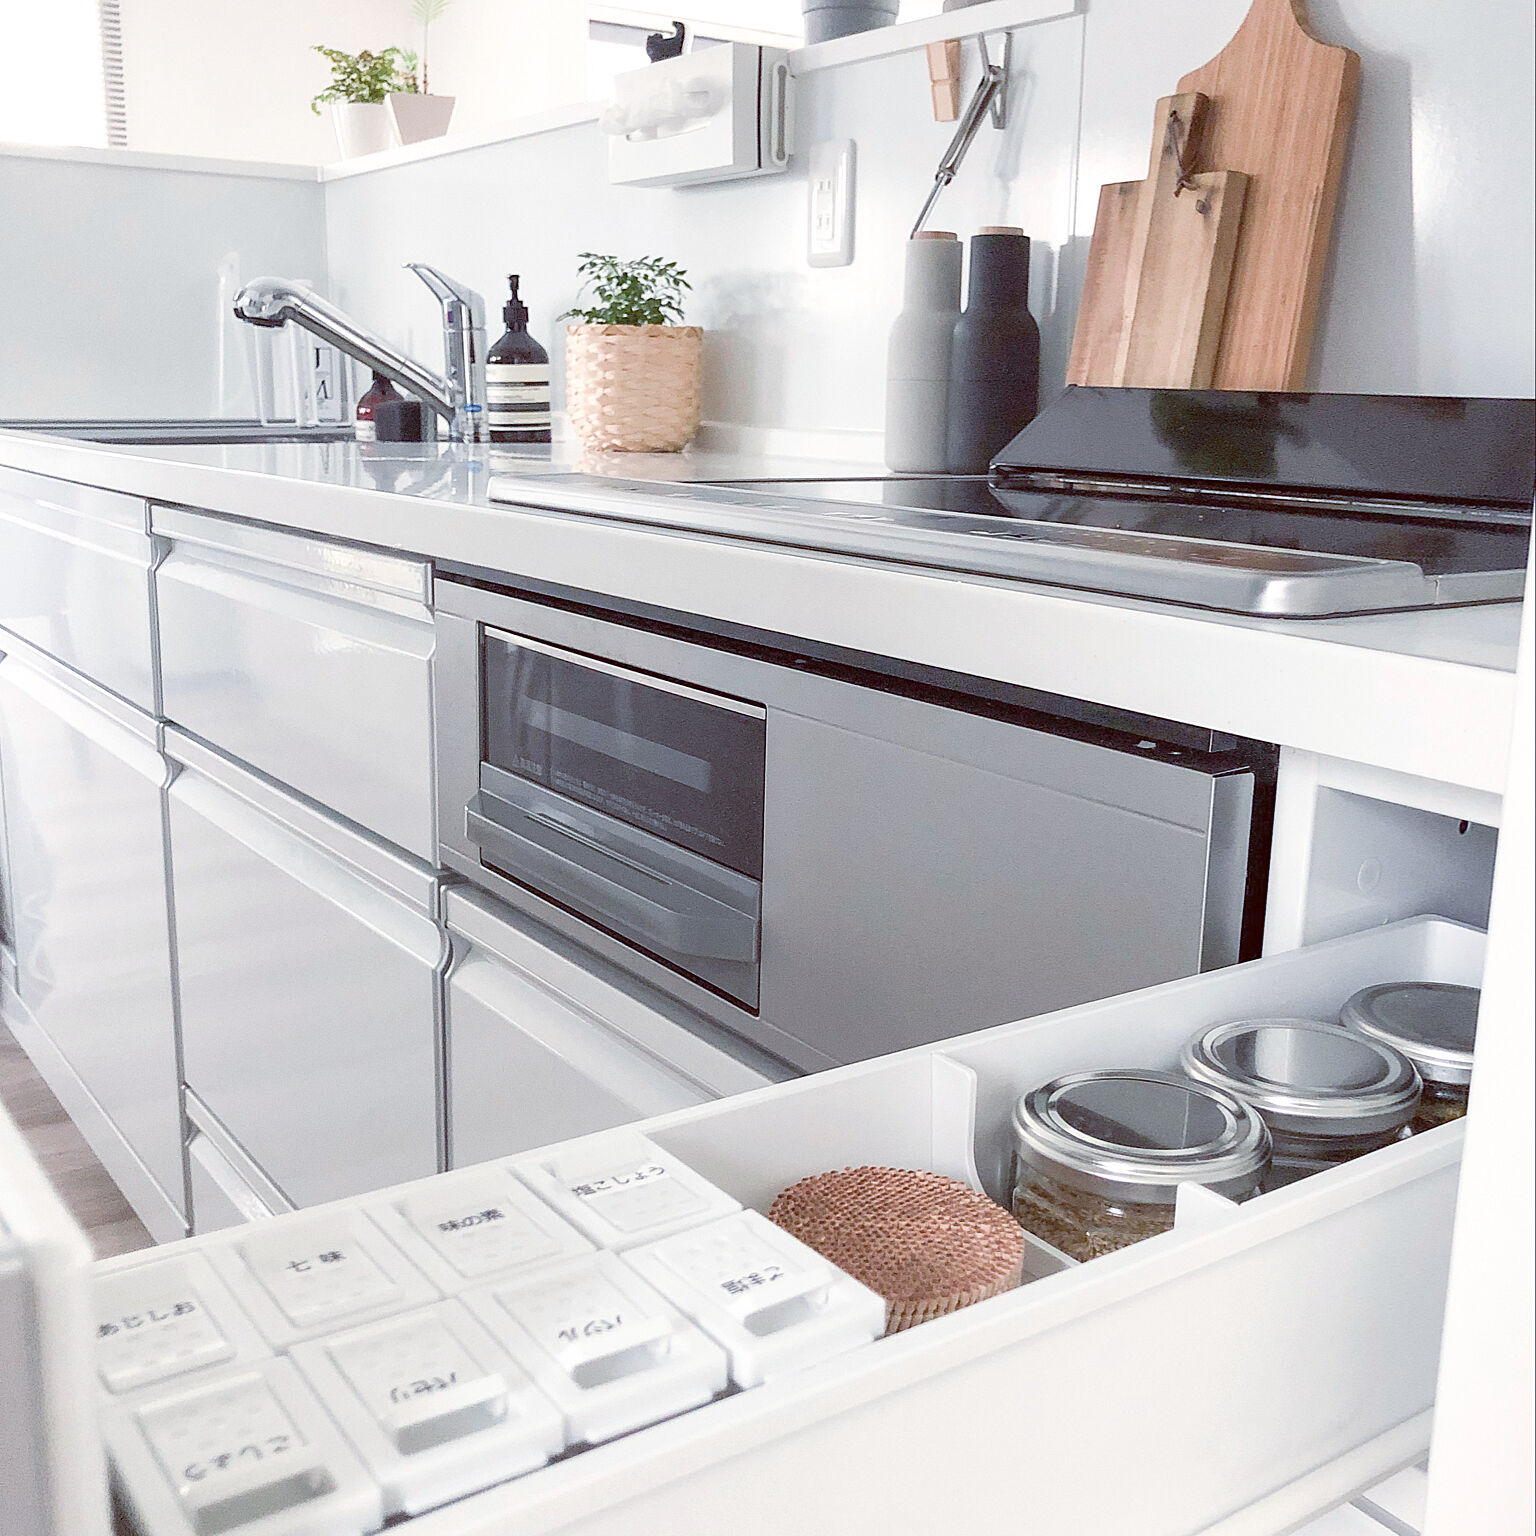 スッキリ 使いやすいキッチンに 賢く収納する10のコツ Roomclip Mag 暮らしとインテリアのwebマガジン